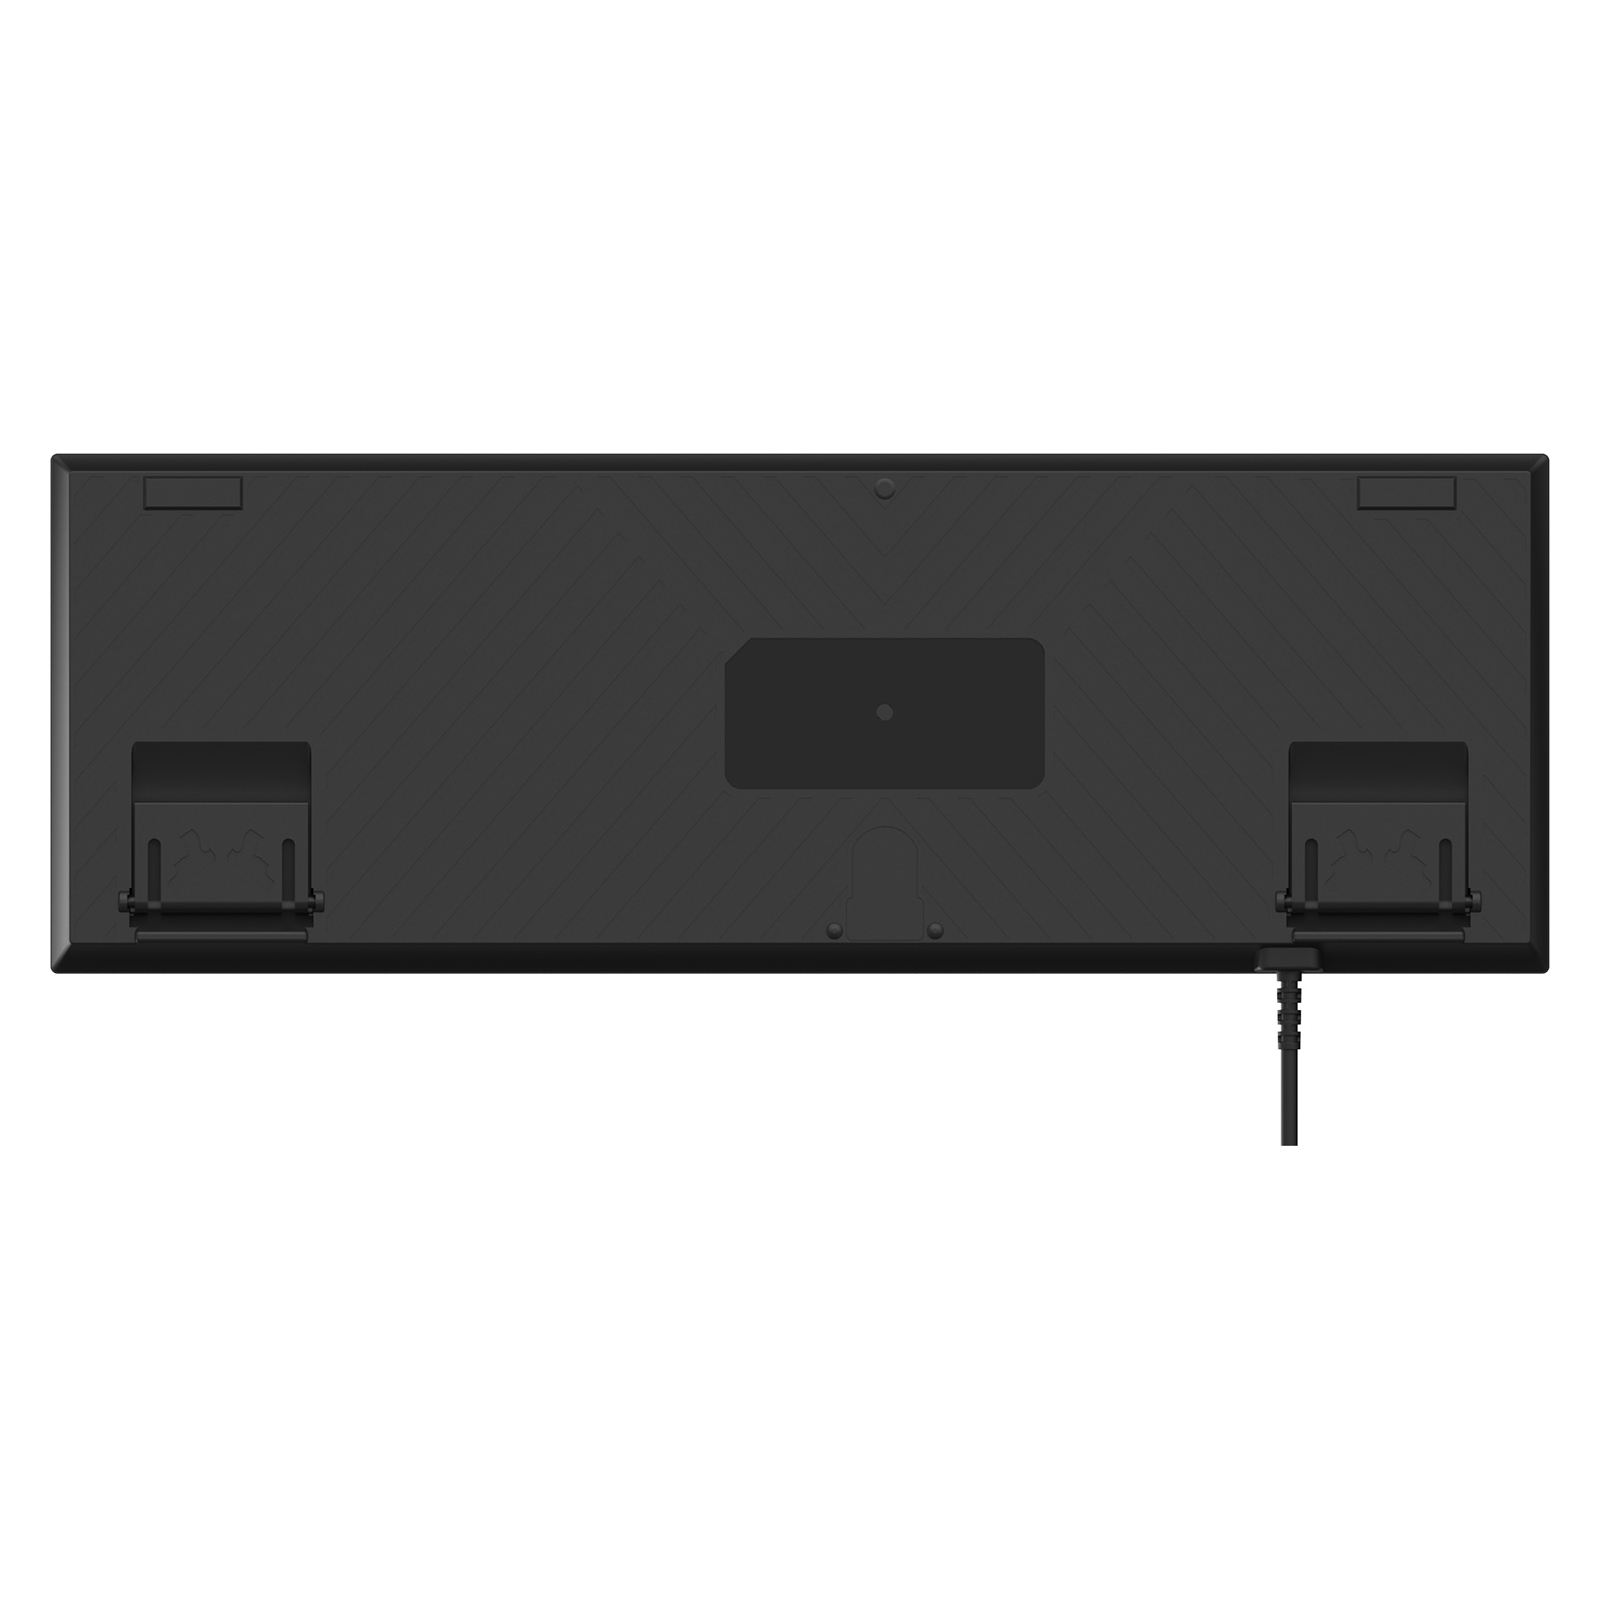 Клавиатура GamePro MK100B Blue Switch LED USB Black (MK100B) изображение 4